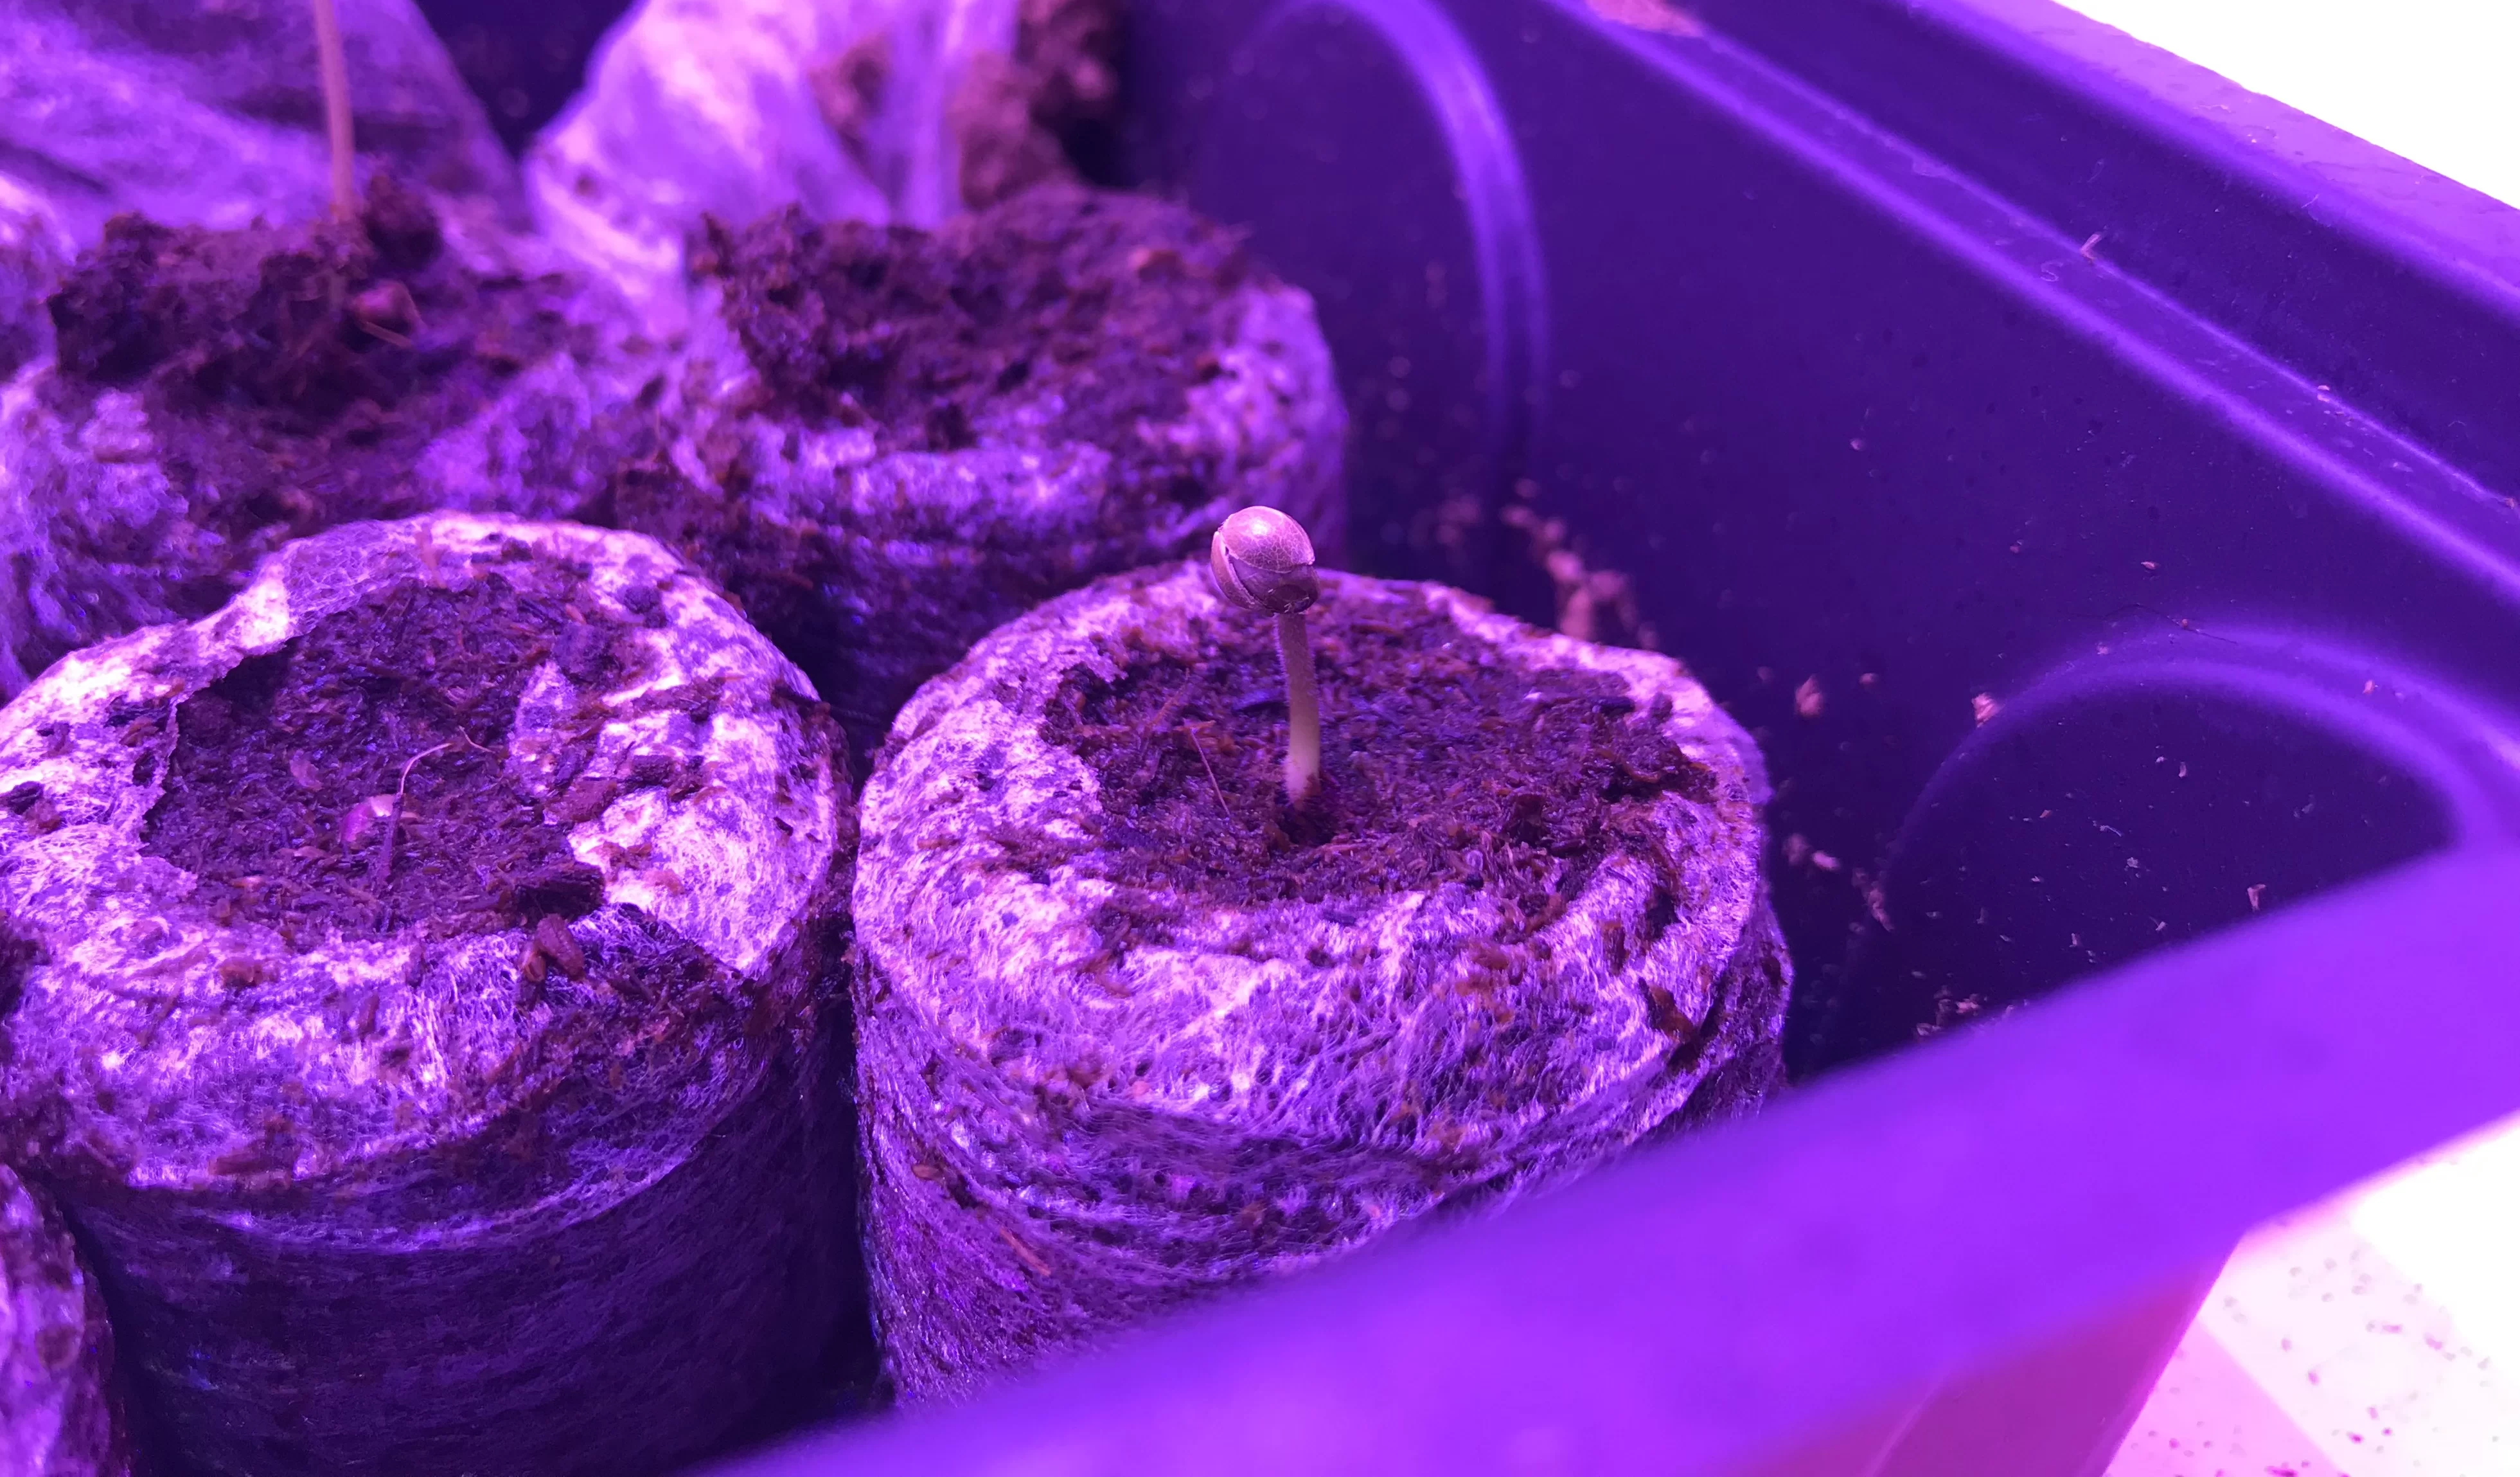 germinate cannabis seeds grow plugs